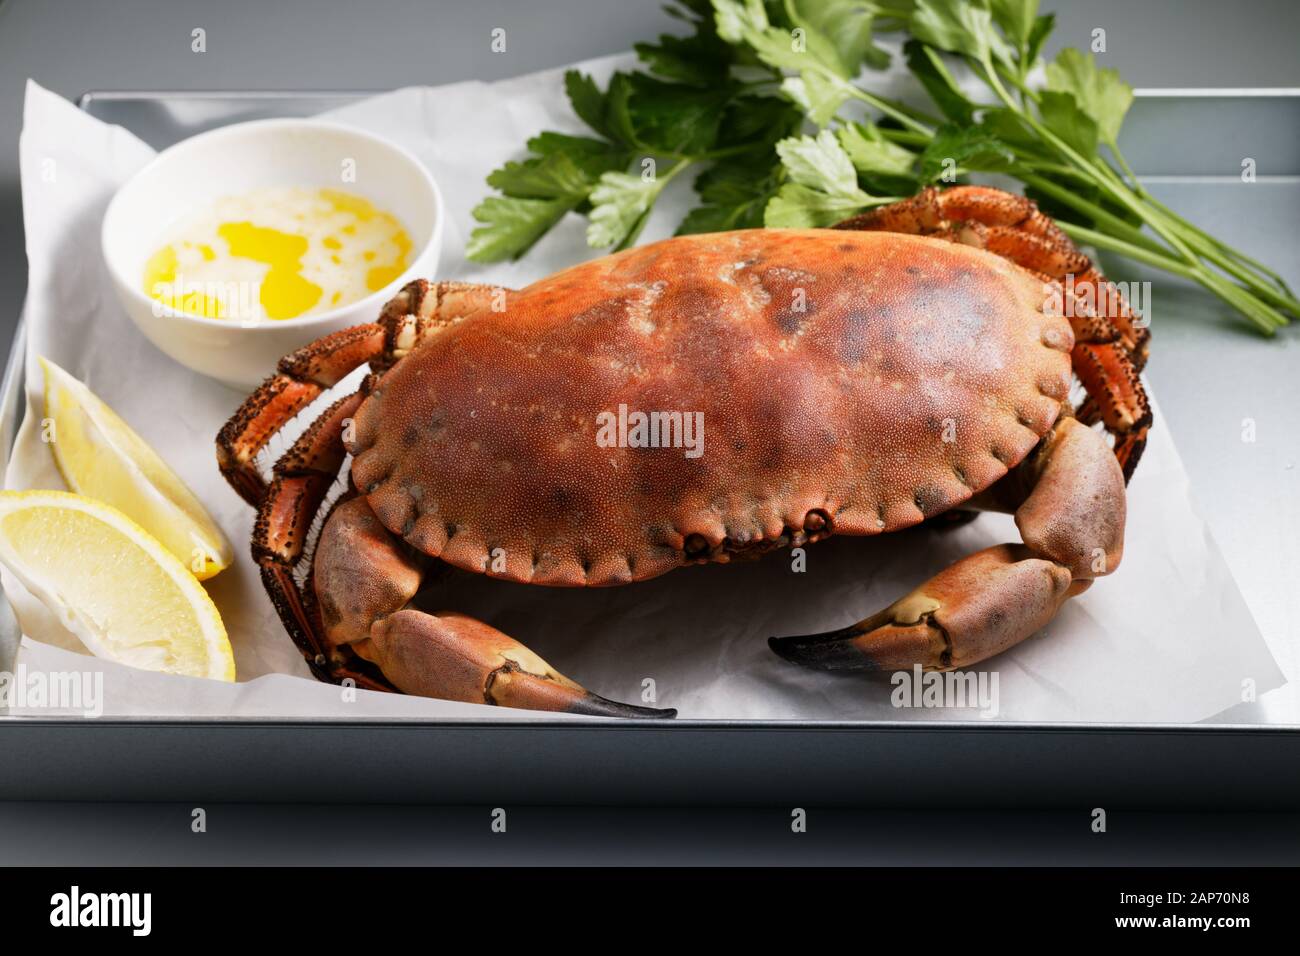 Vorbereitet schwedische Krabben serviert mit Zitrone, Petersilie und Butter gezeichnet Stockfoto